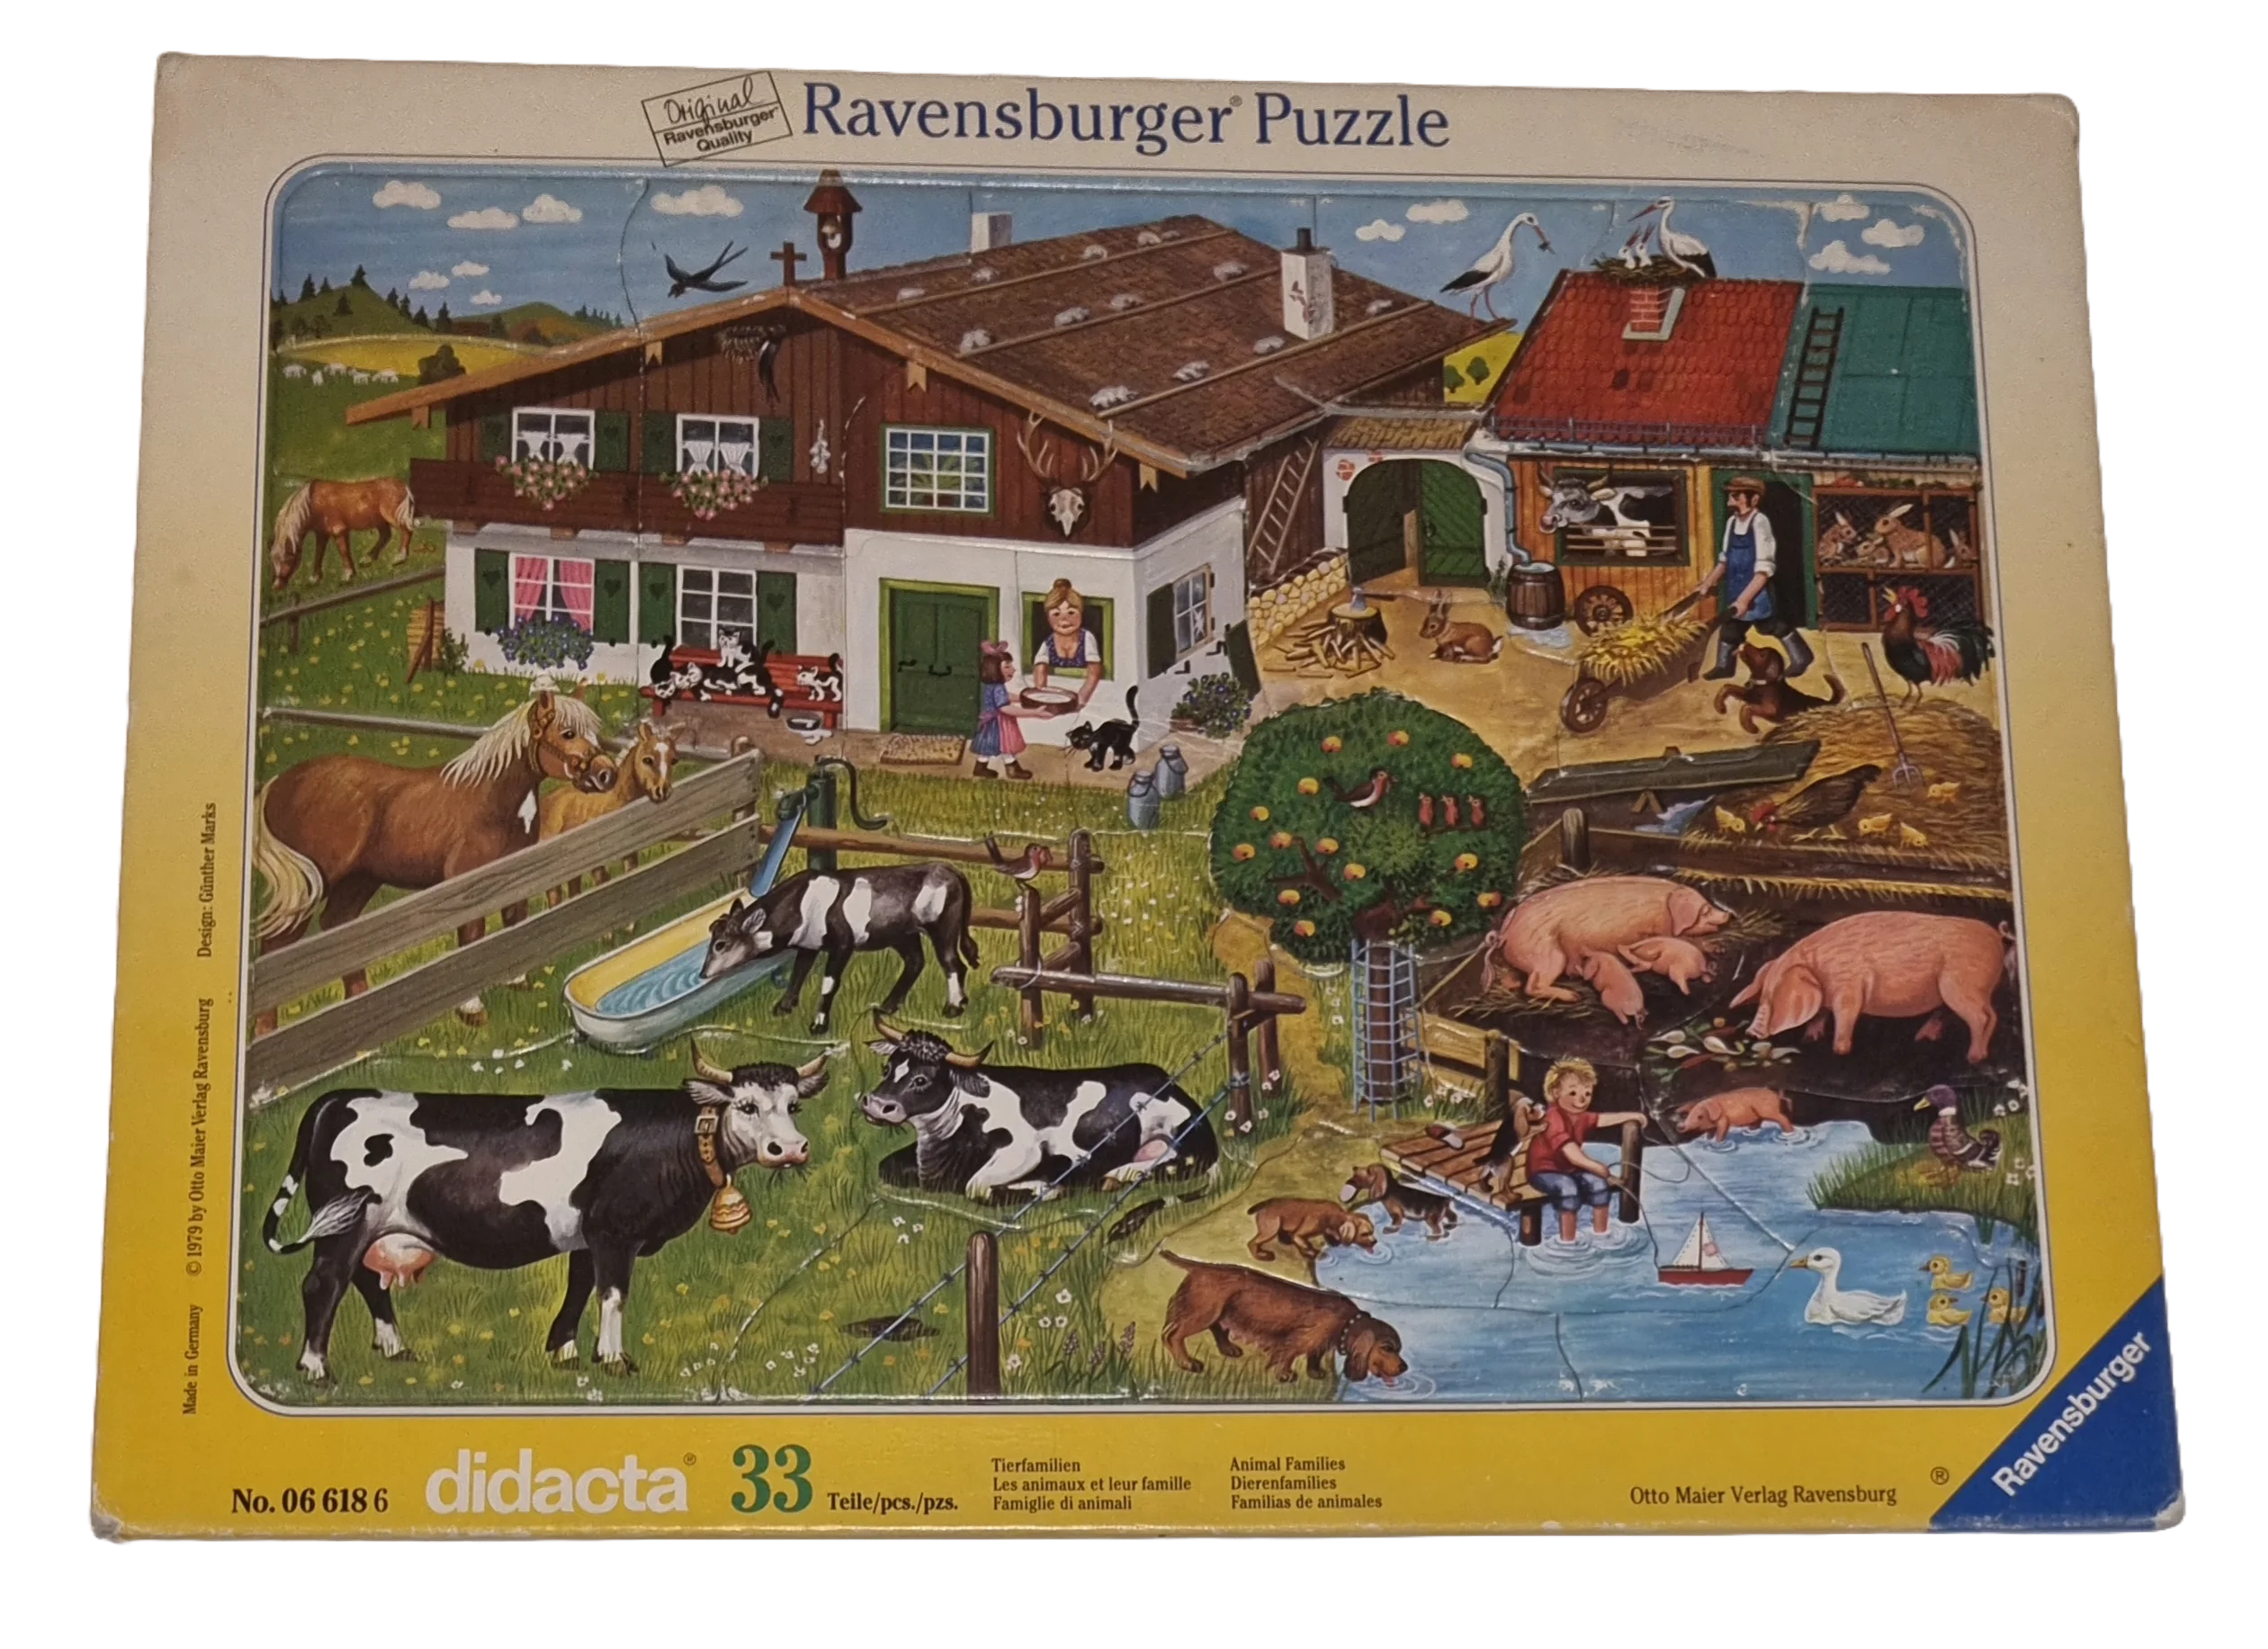 Ravensburger Rahmenpuzzle Didacta Tierfamilien 35 Teile 066186